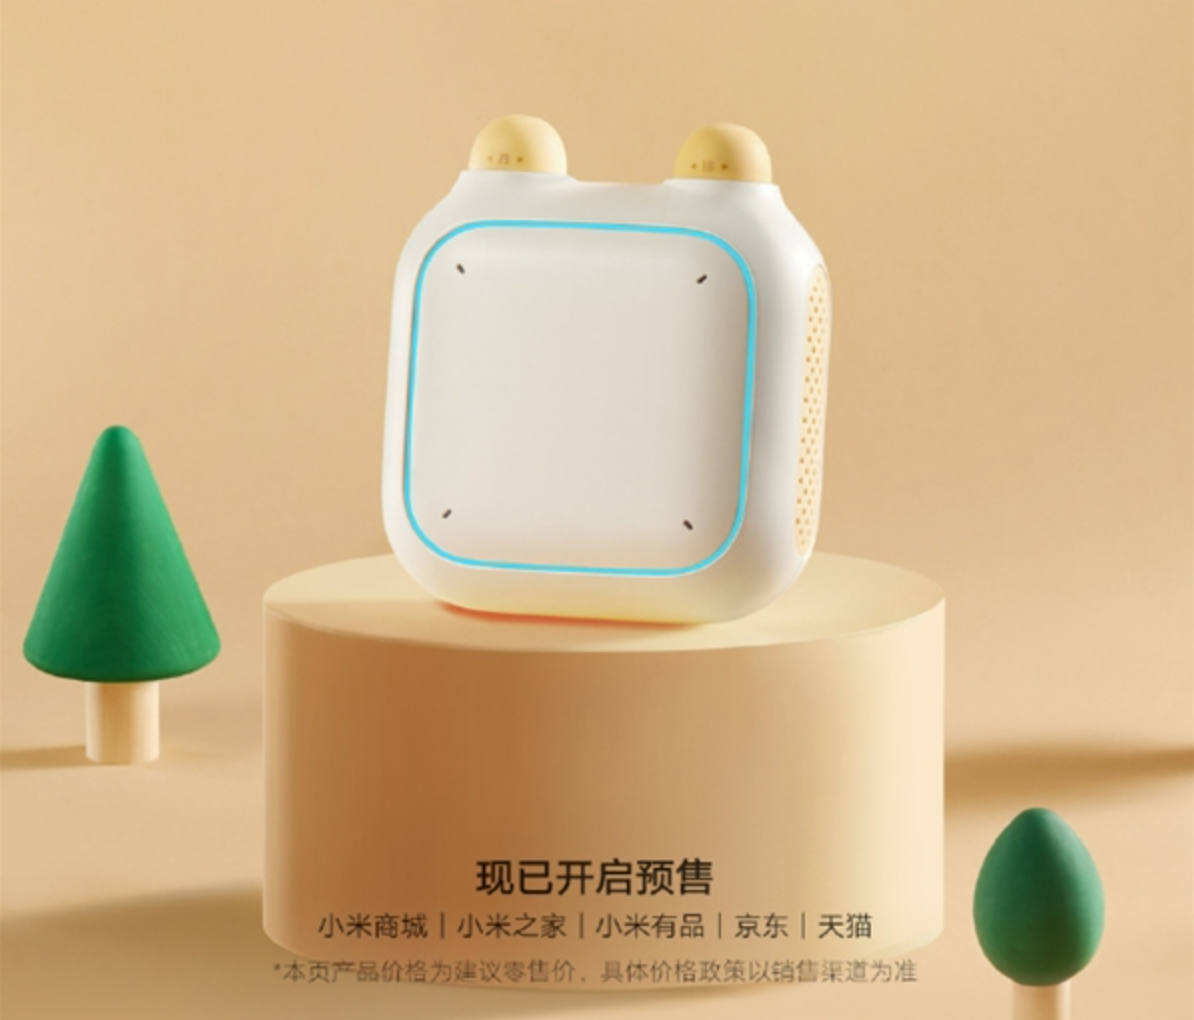 smart speaker Xiaoai Speaker Kids Edition